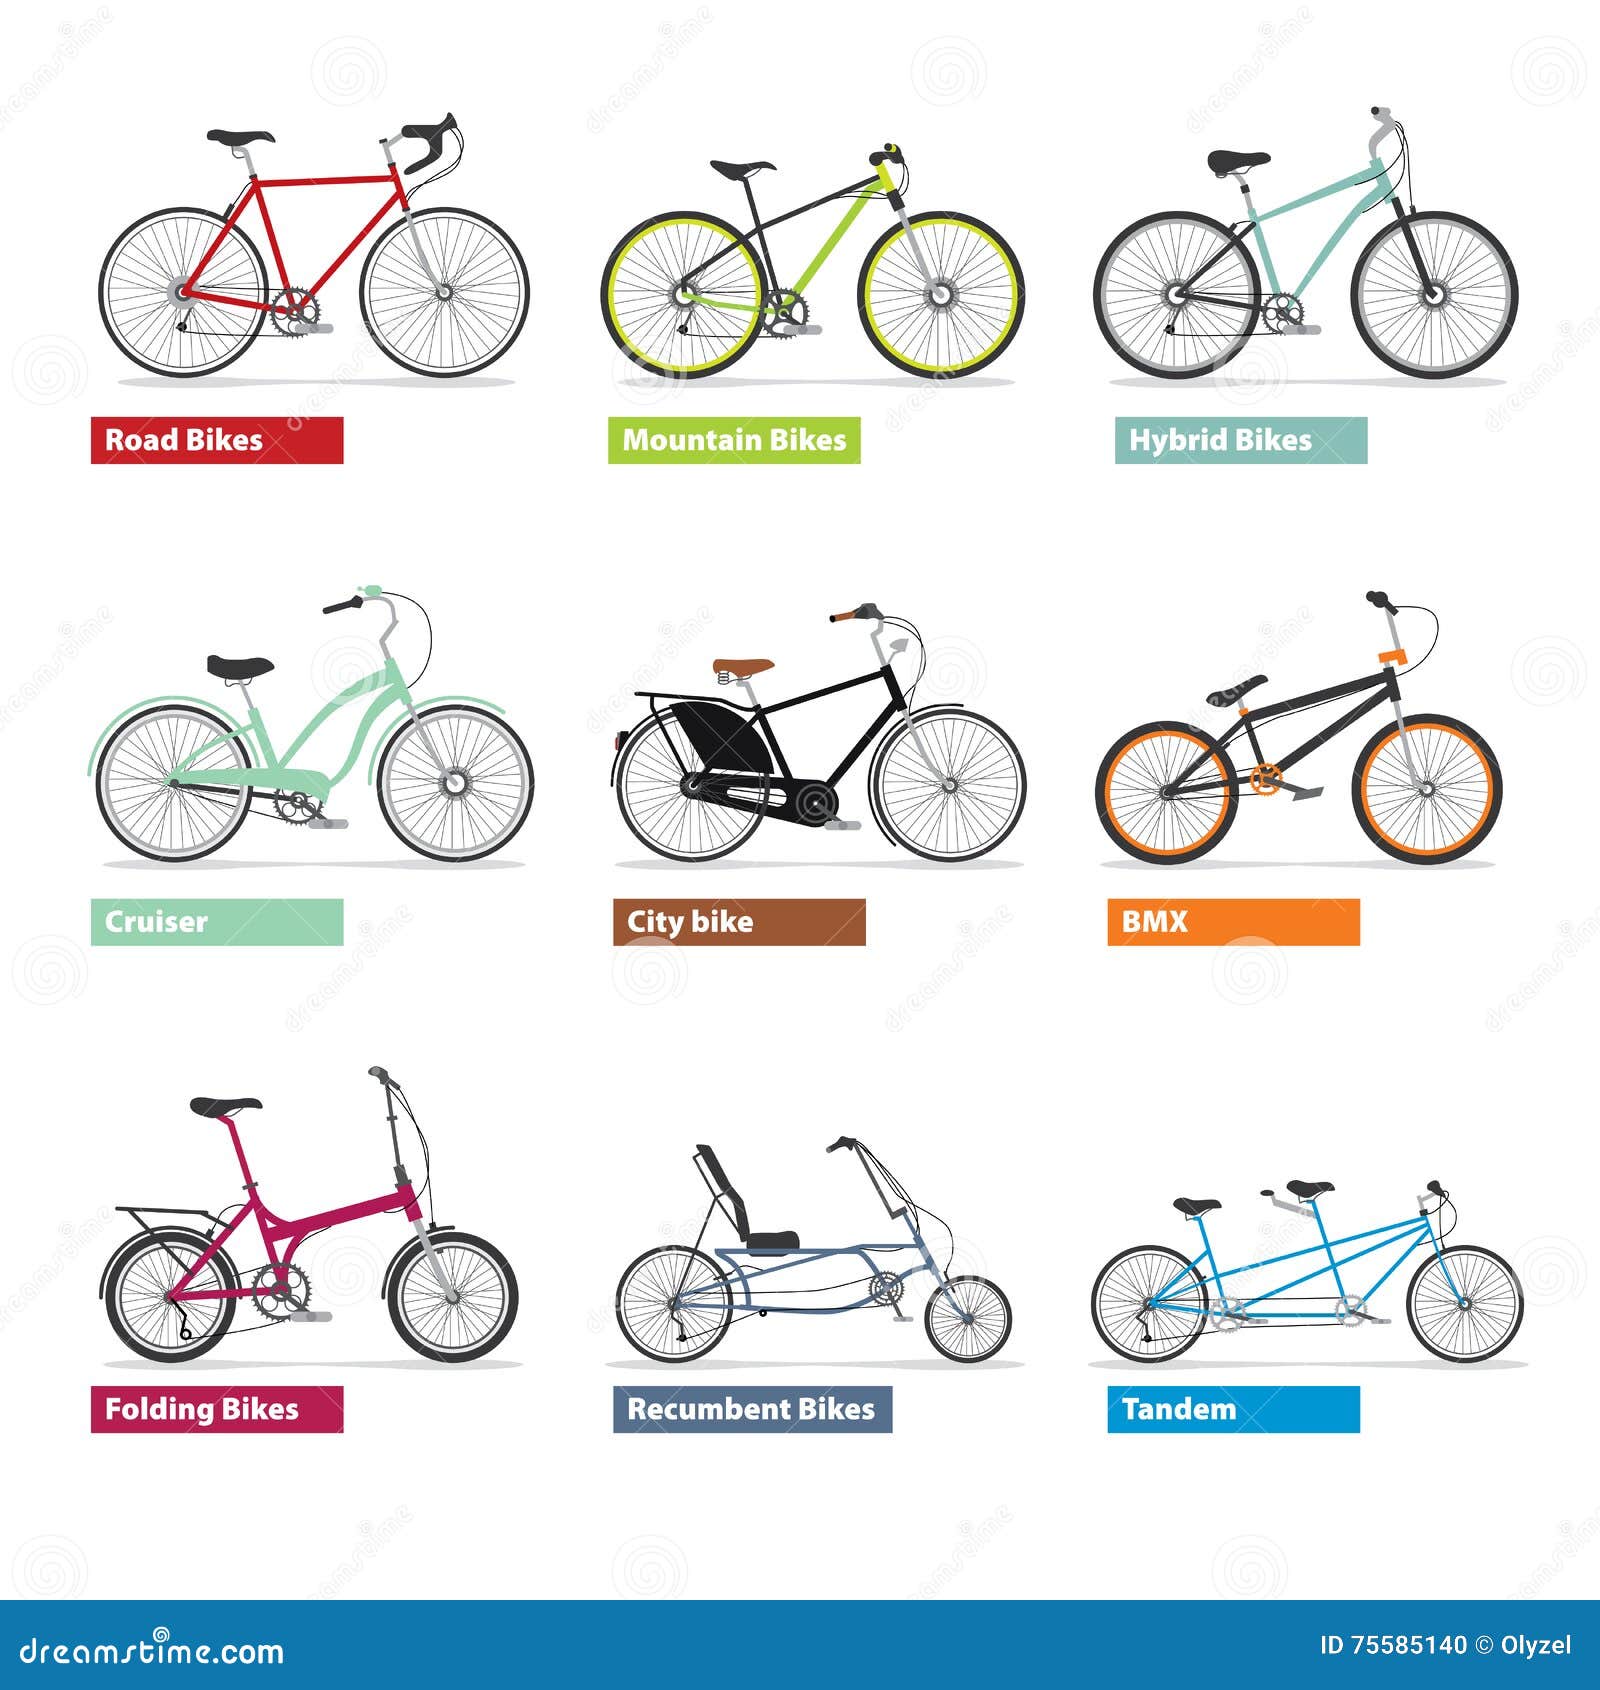 Как отличить велосипеды. Классификация велосипедных рам. Разные типы велосипедов. Тип рамы велосипеда. Разнообразия моделей велосипедов.